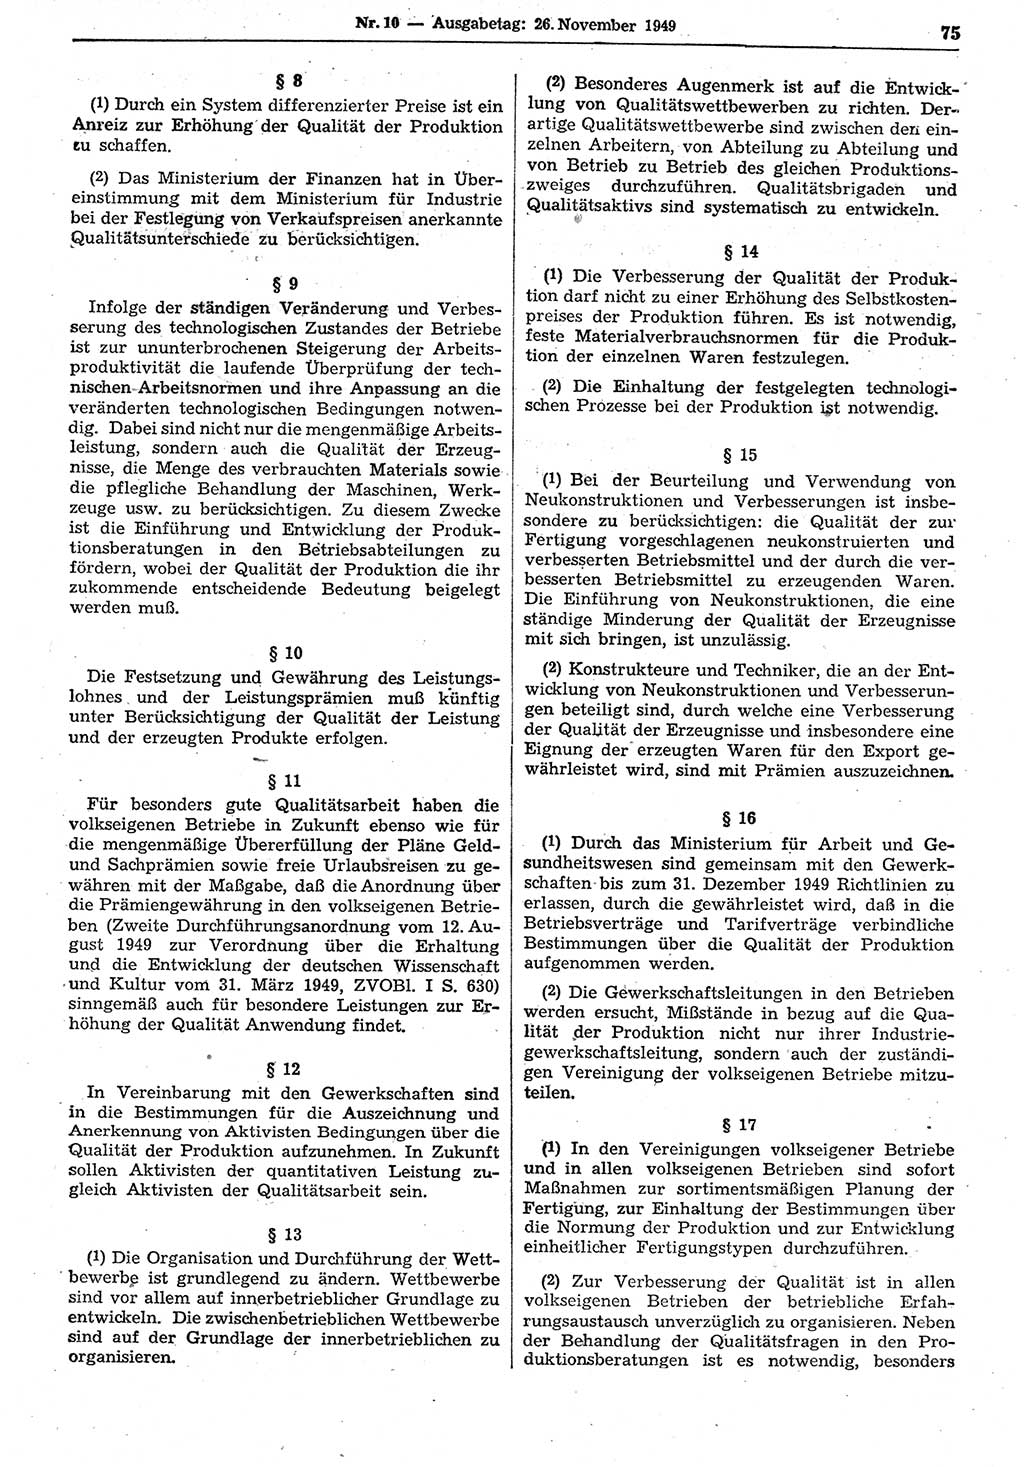 Gesetzblatt (GBl.) der Deutschen Demokratischen Republik (DDR) 1949, Seite 75 (GBl. DDR 1949, S. 75)